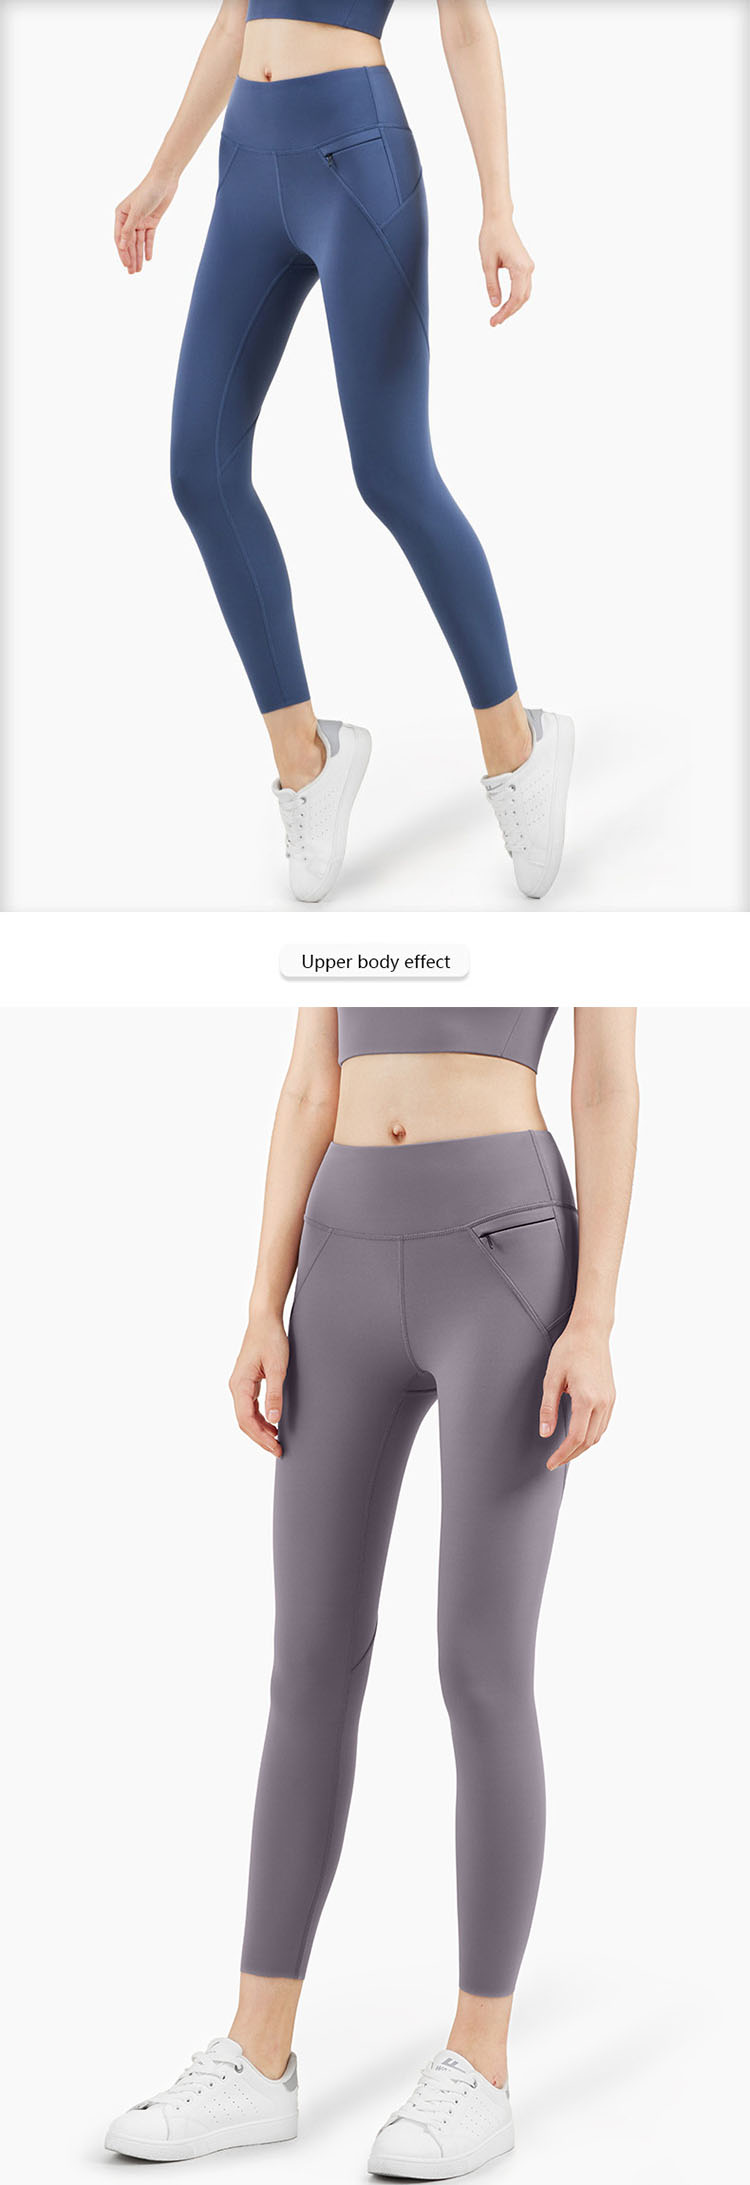 Super tight pants - Activewear manufacturer Sportswear Manufacturer HL